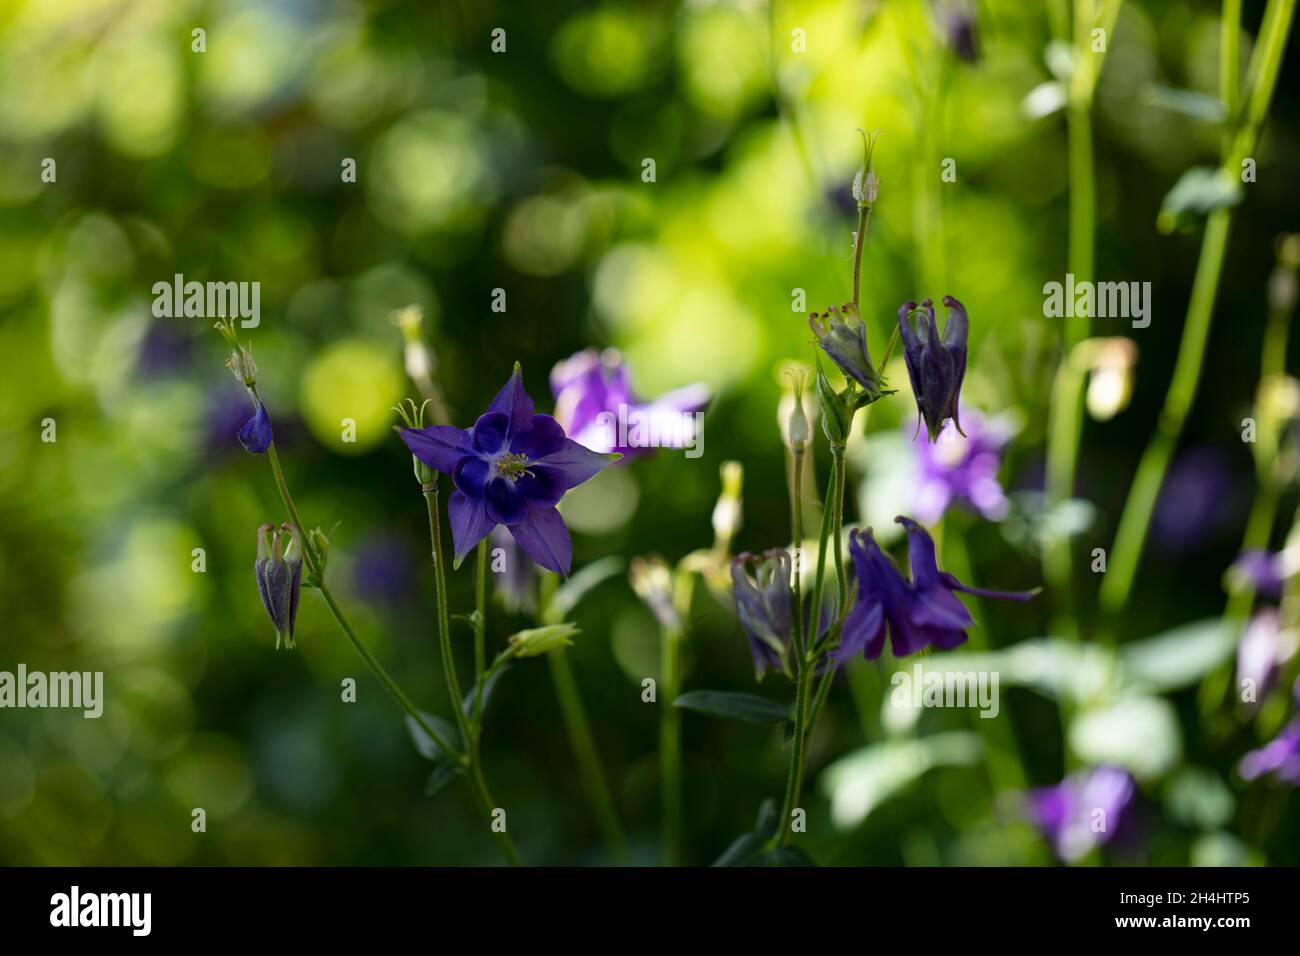 Kurzsportornige Akelei (Aquilegia vulgaris), lila / blauviolette Blüten der Akelei, in einem Garten in NRW, Deutschland. Foto Stock